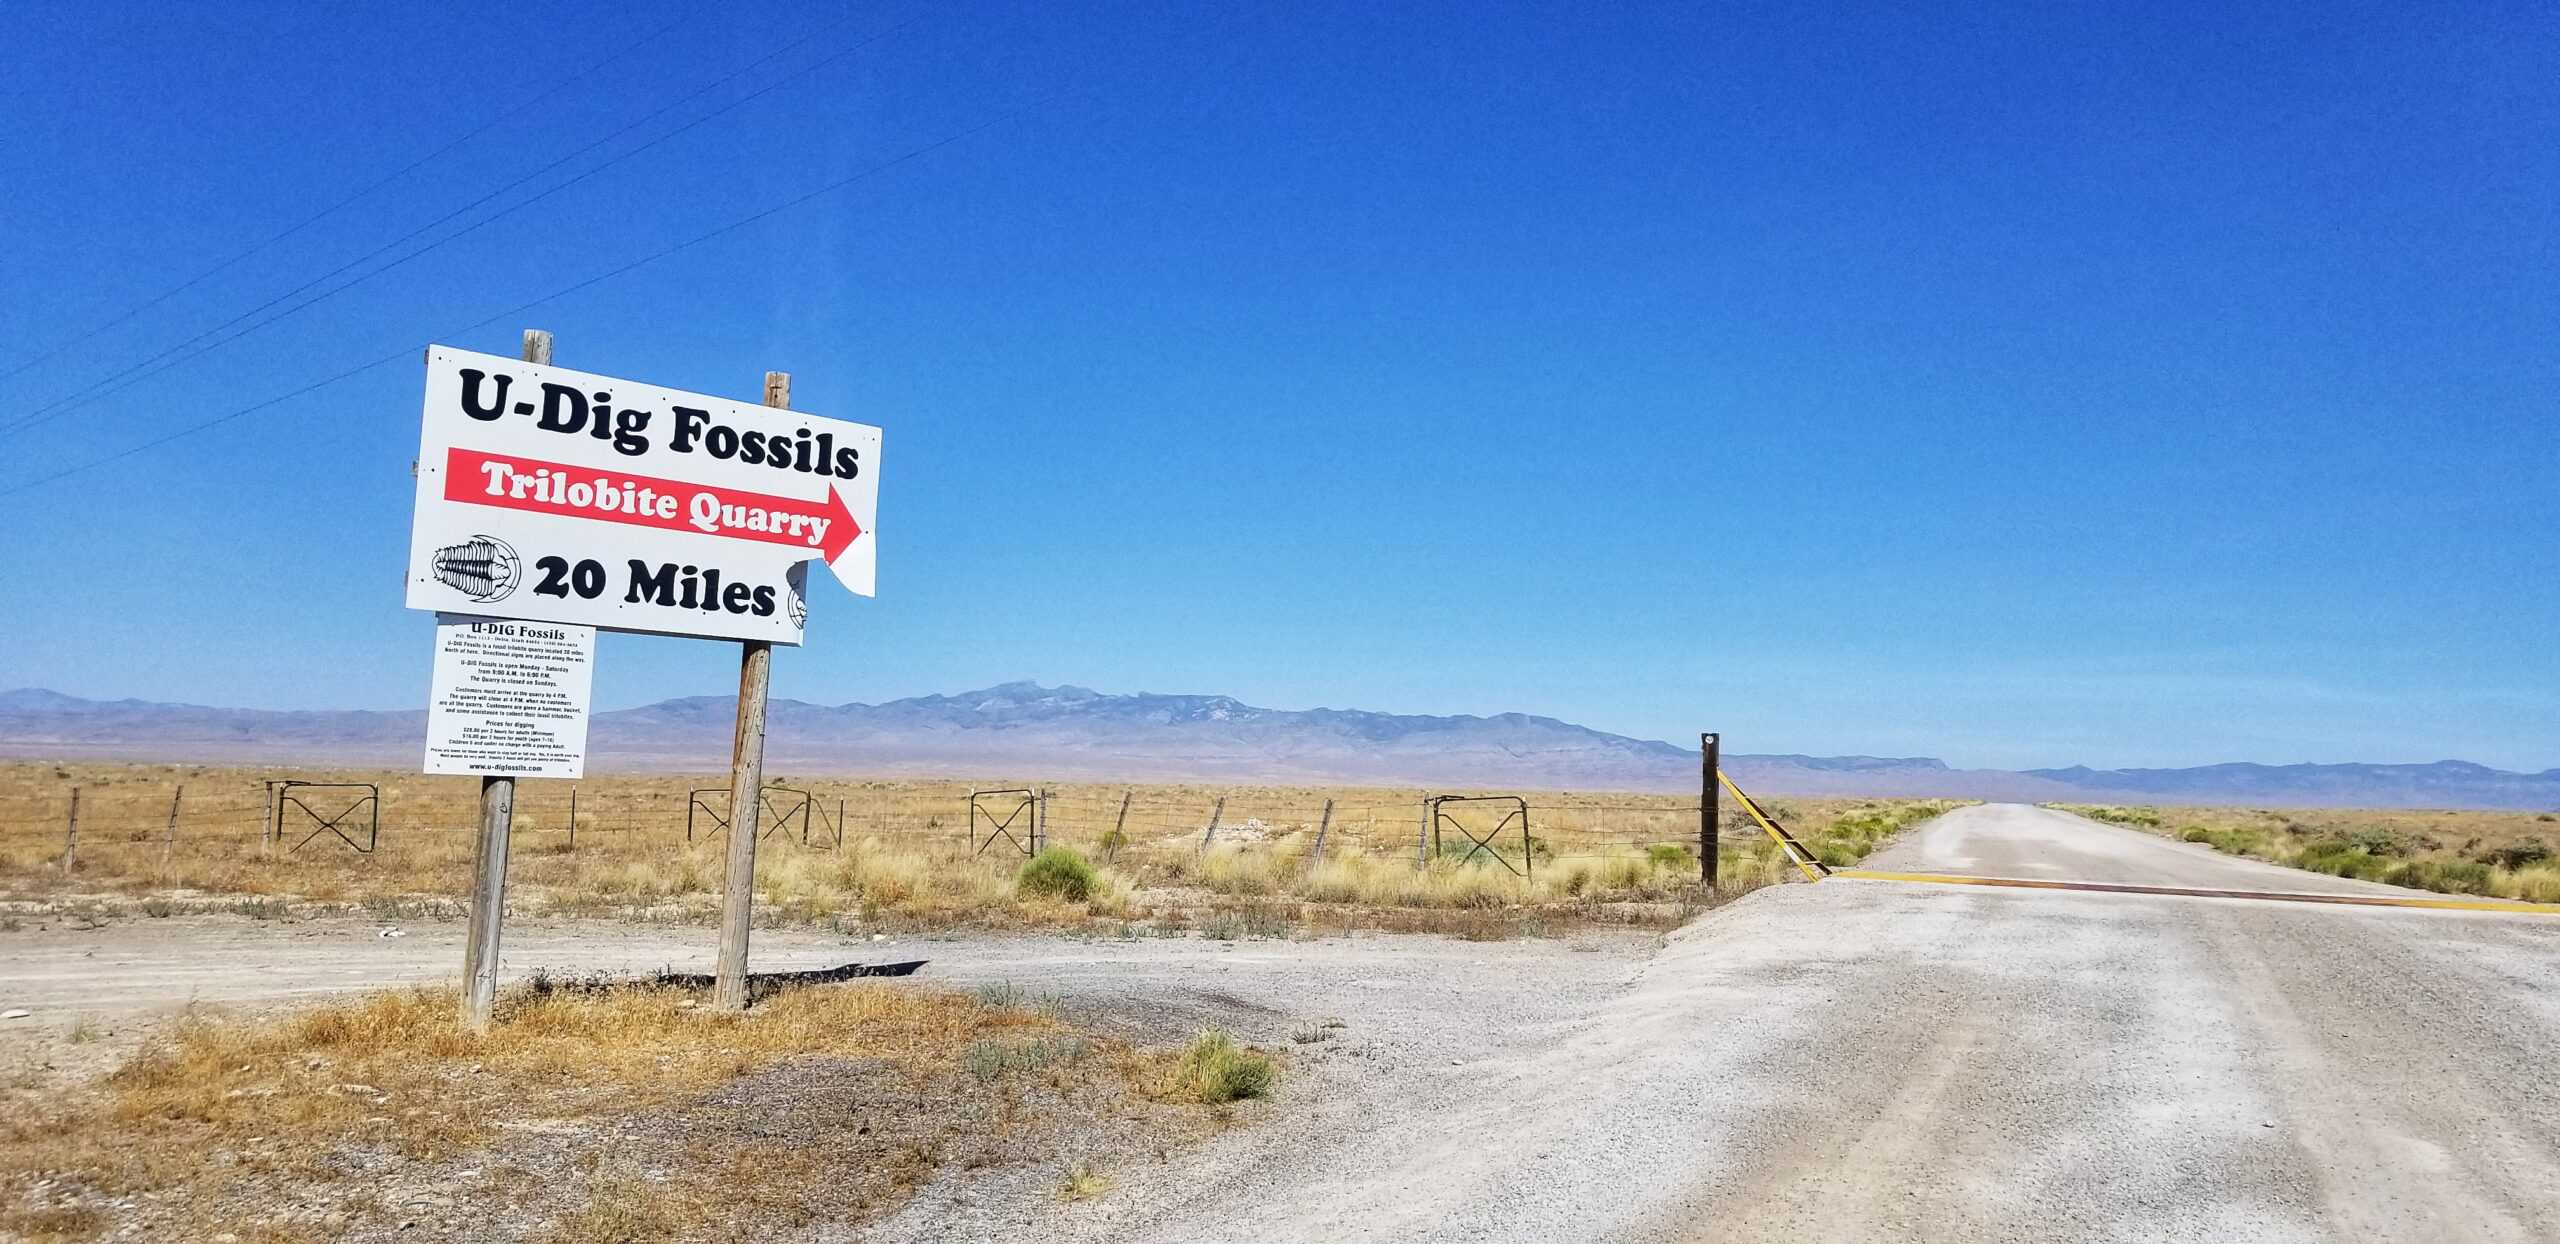 U Dig Fossils Trilobite Quarry sign